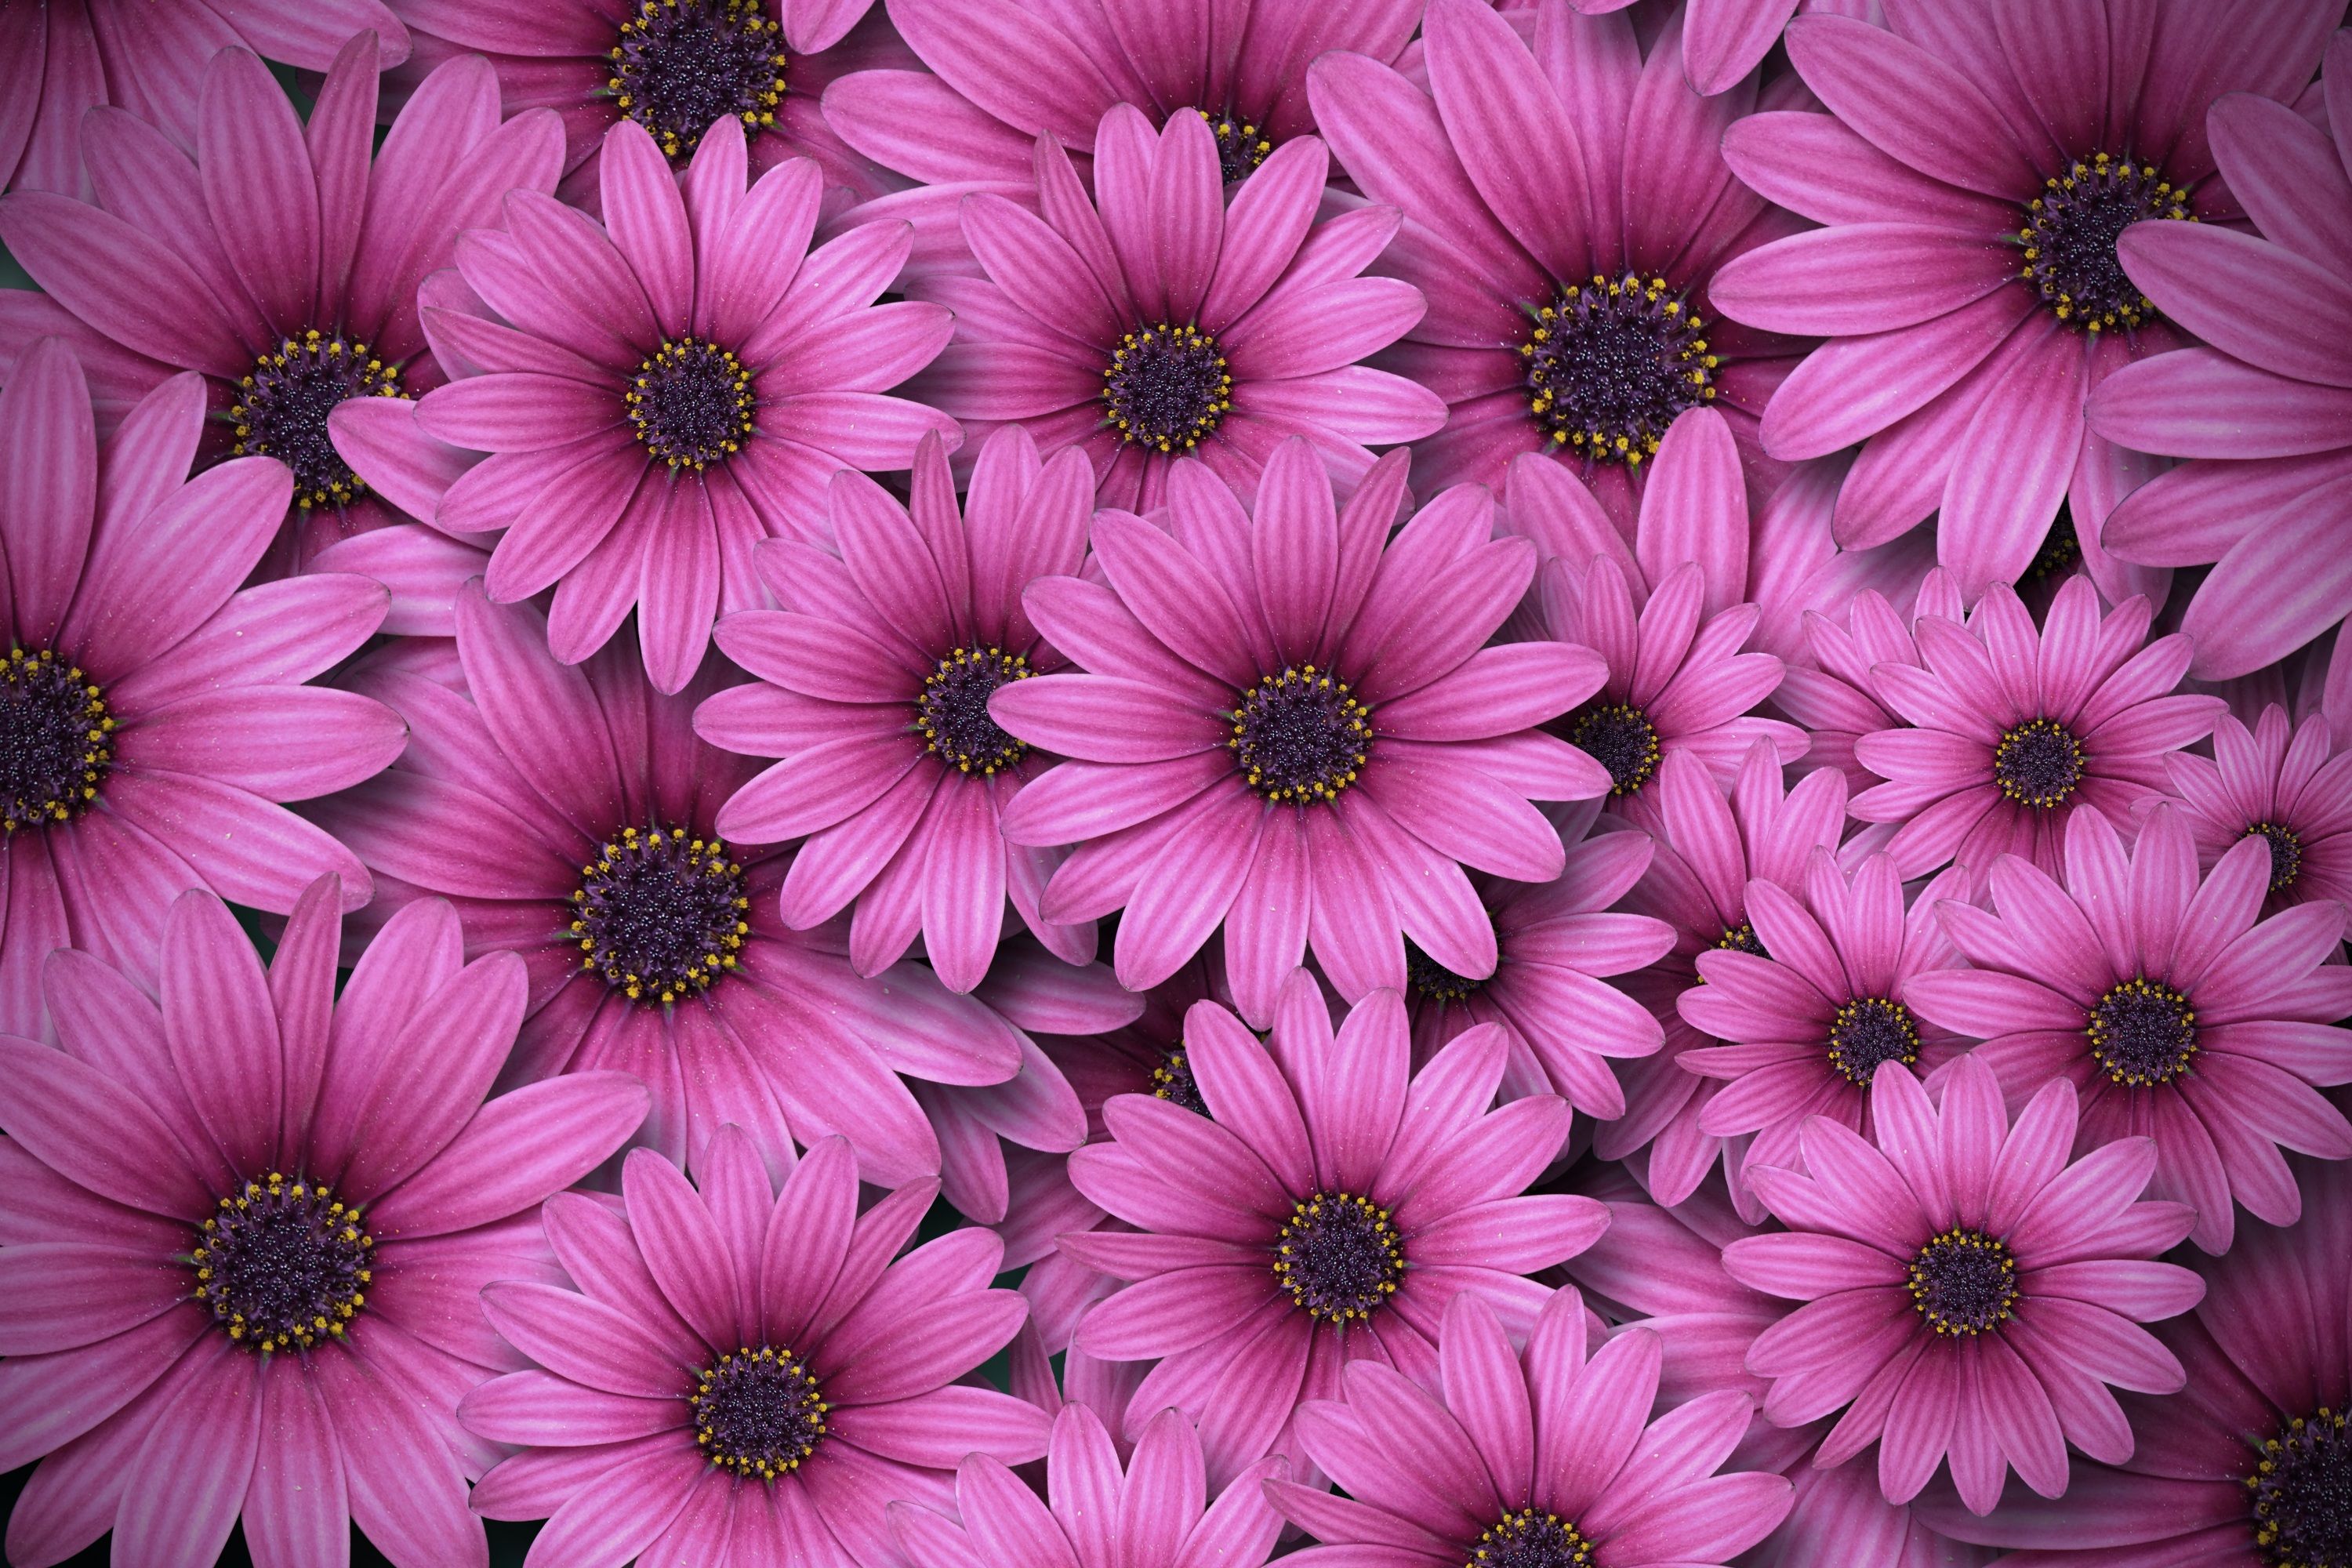 Gerbera flowers 4K Wallpaper, Daisy flowers, Pink daisies, Aesthetic, Spring, Flowers